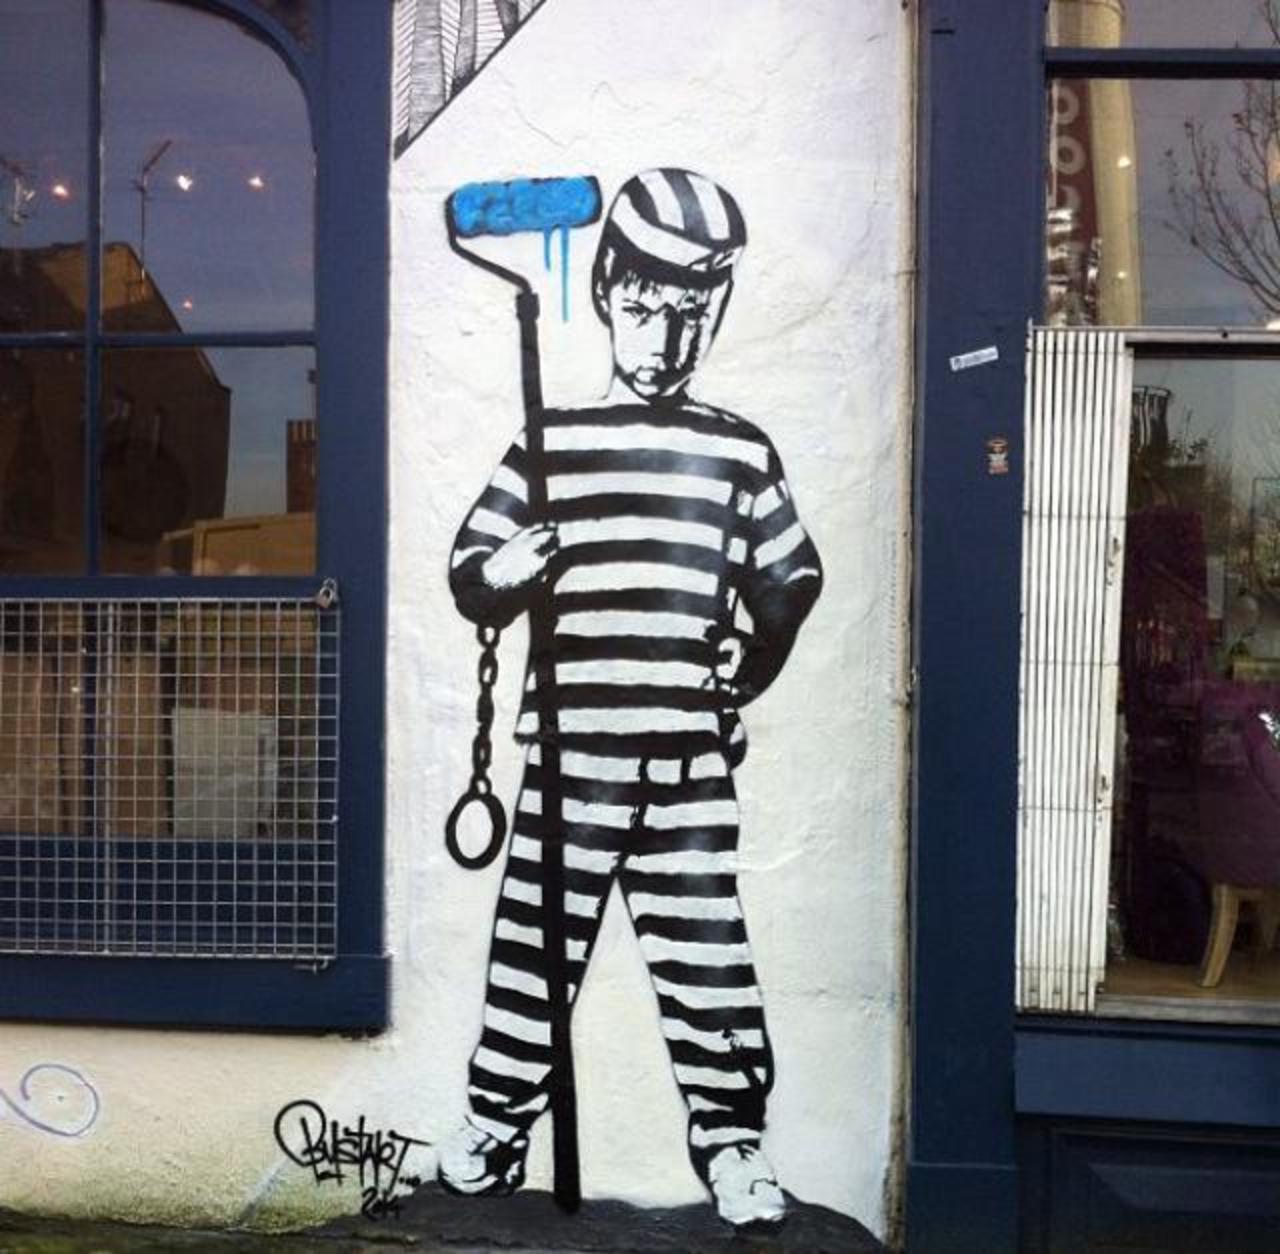 ArtOfBust recent Street Art in Camden Town, London

#art #arte #graffiti #steetart http://t.co/qdyUExlHzN